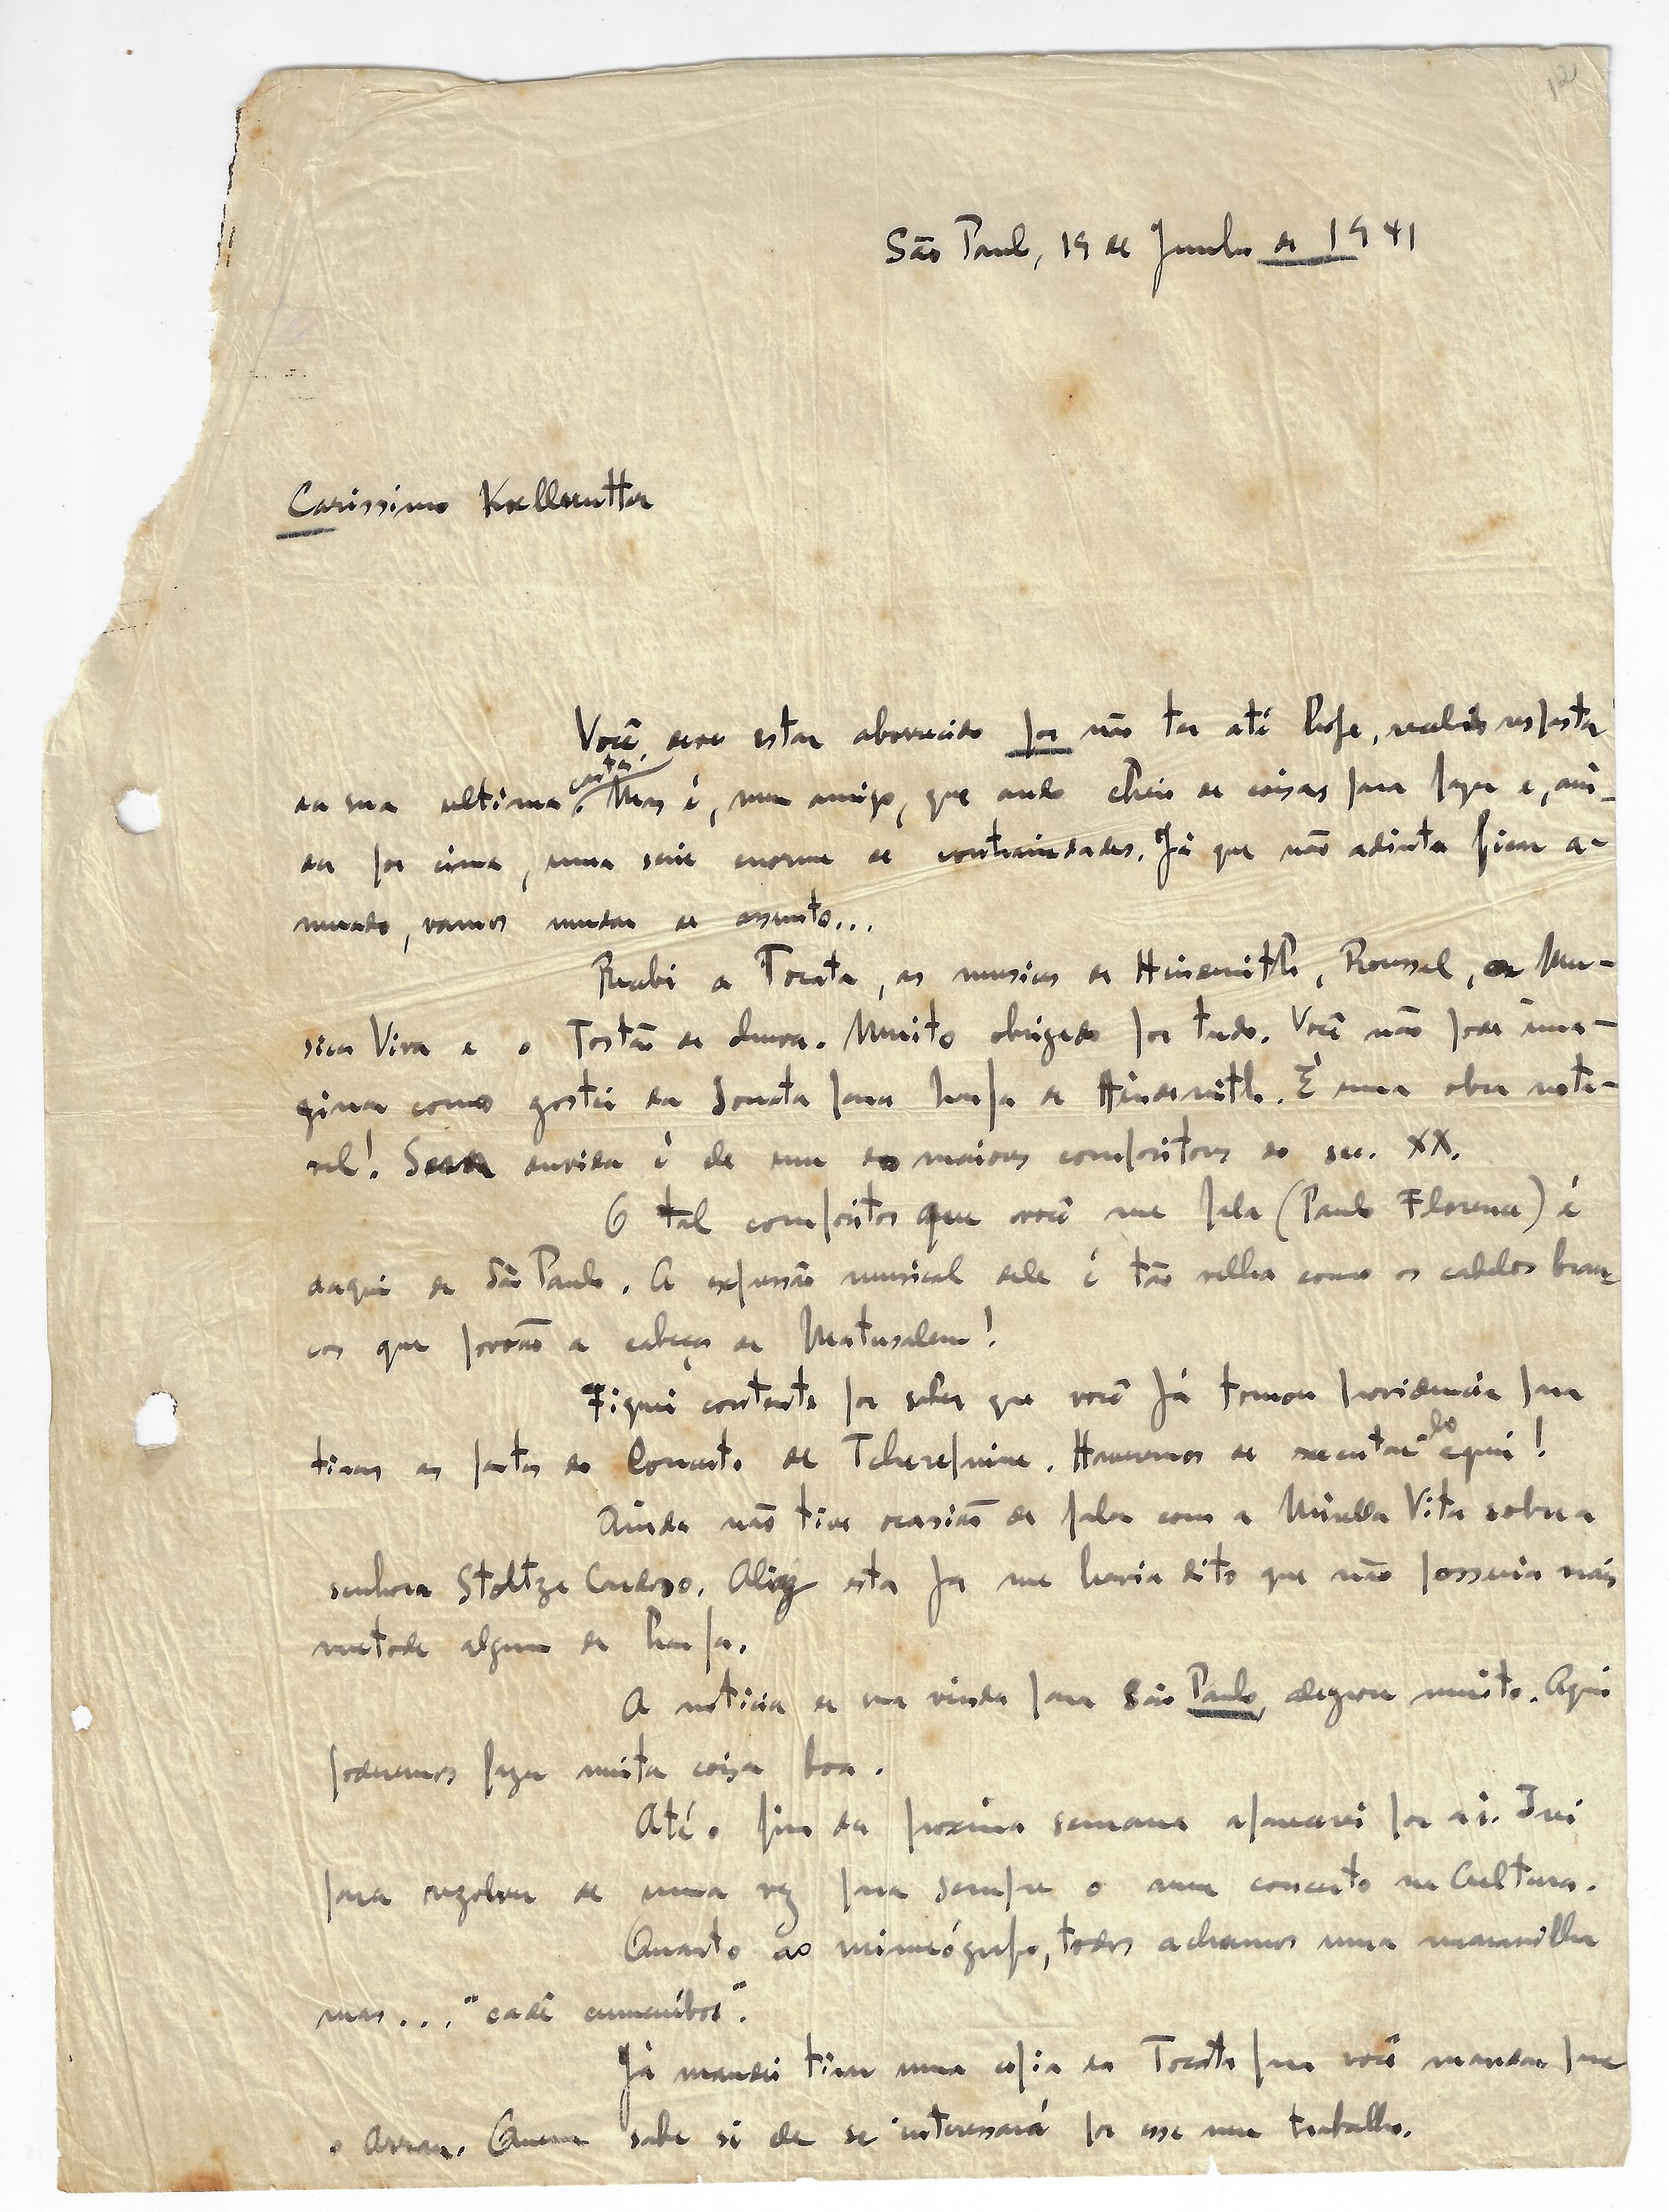 Carta de Guarnieri a Koellreutter em 19 de junho de 1941